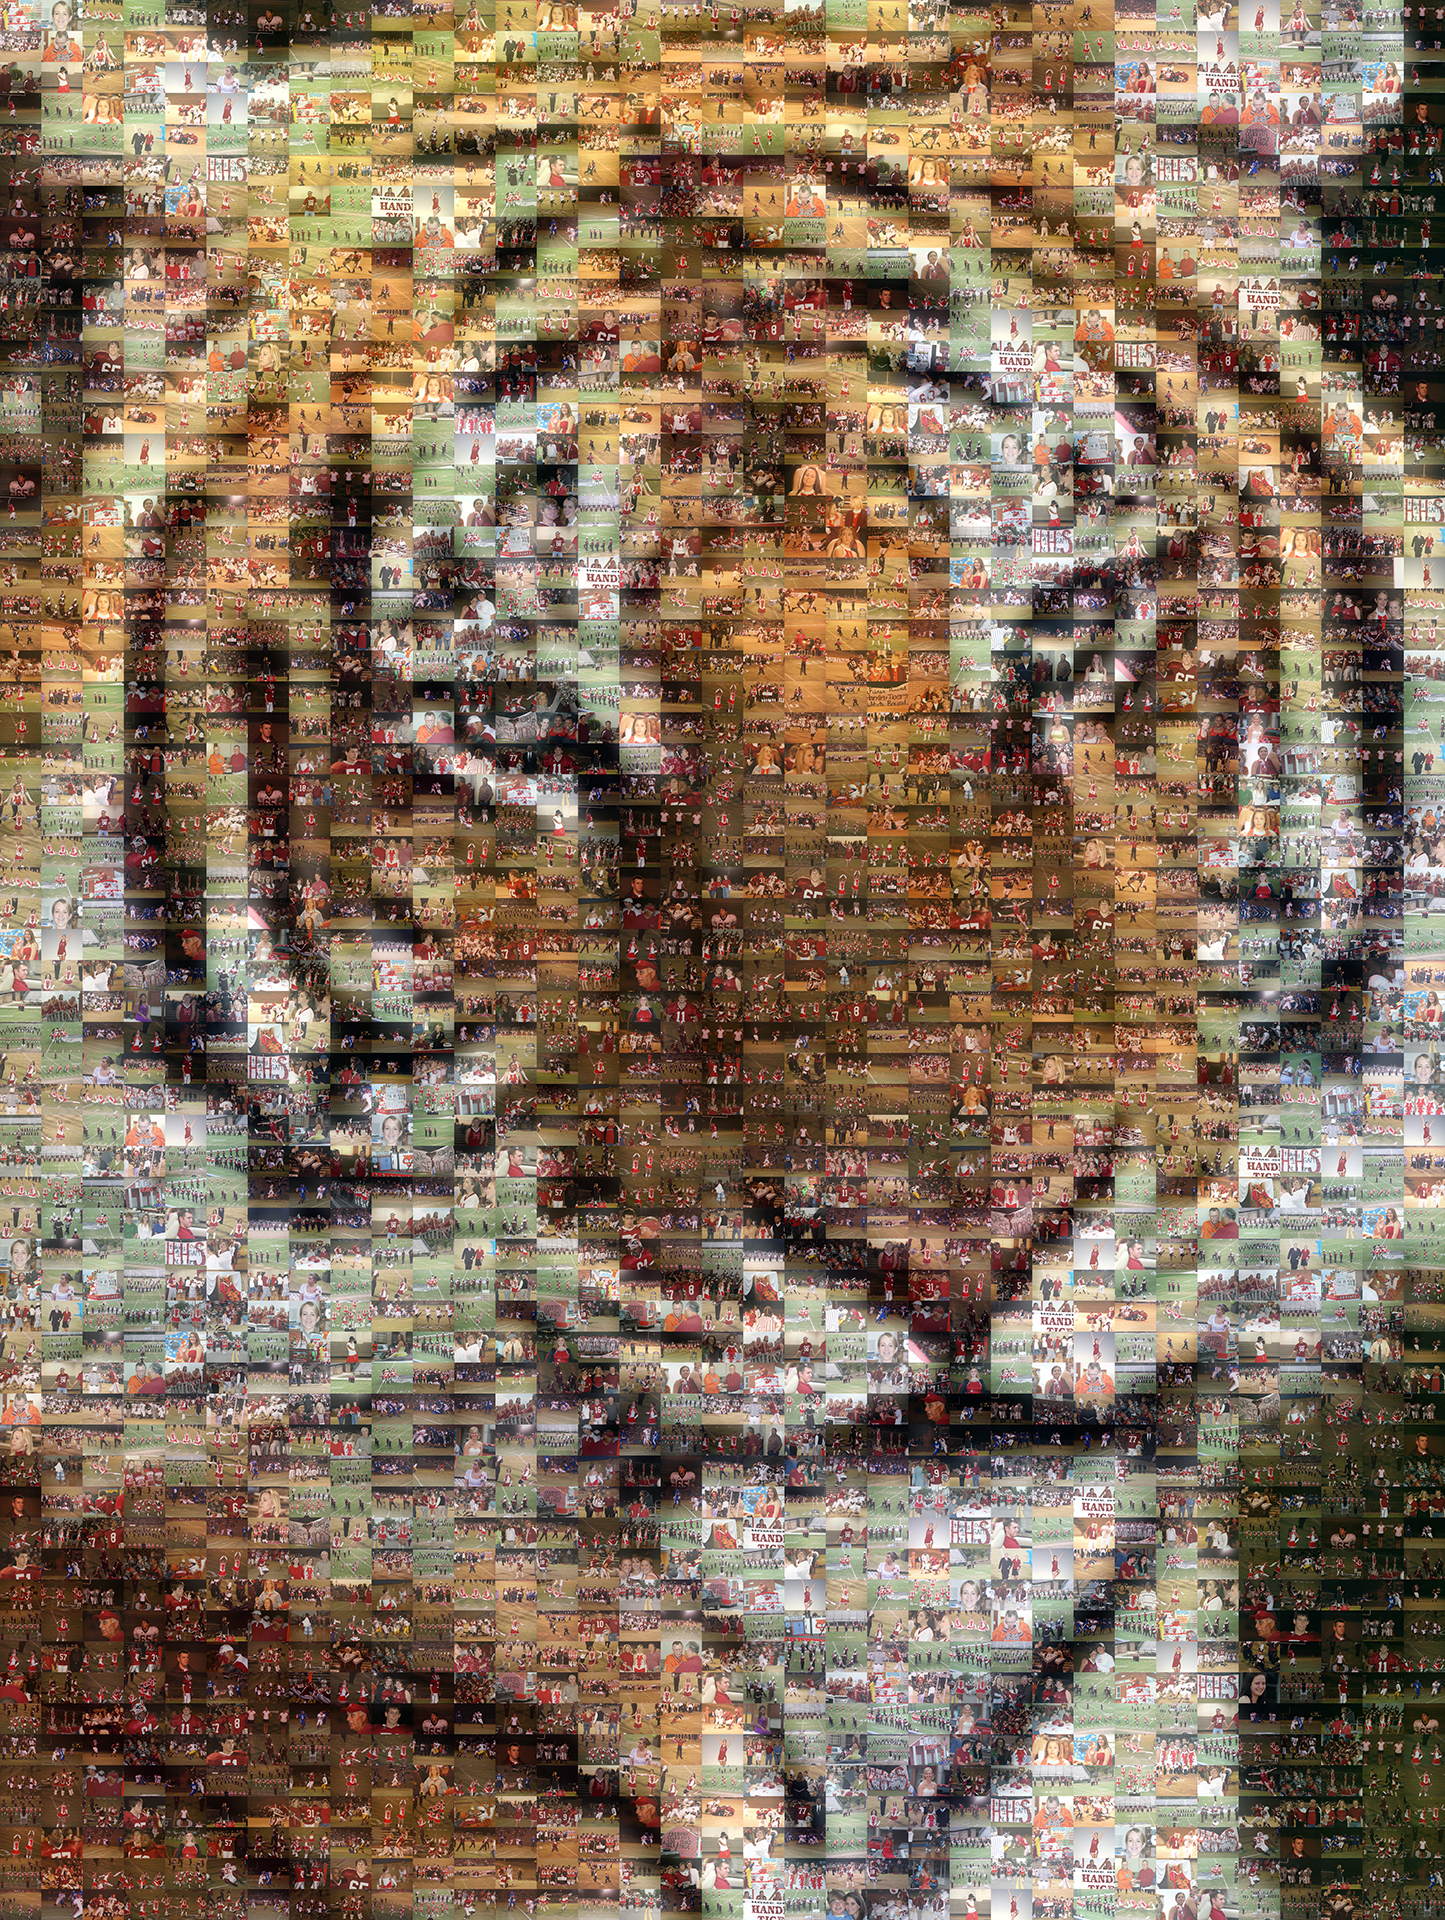 photo mosaic created using 325 customer selected football photos